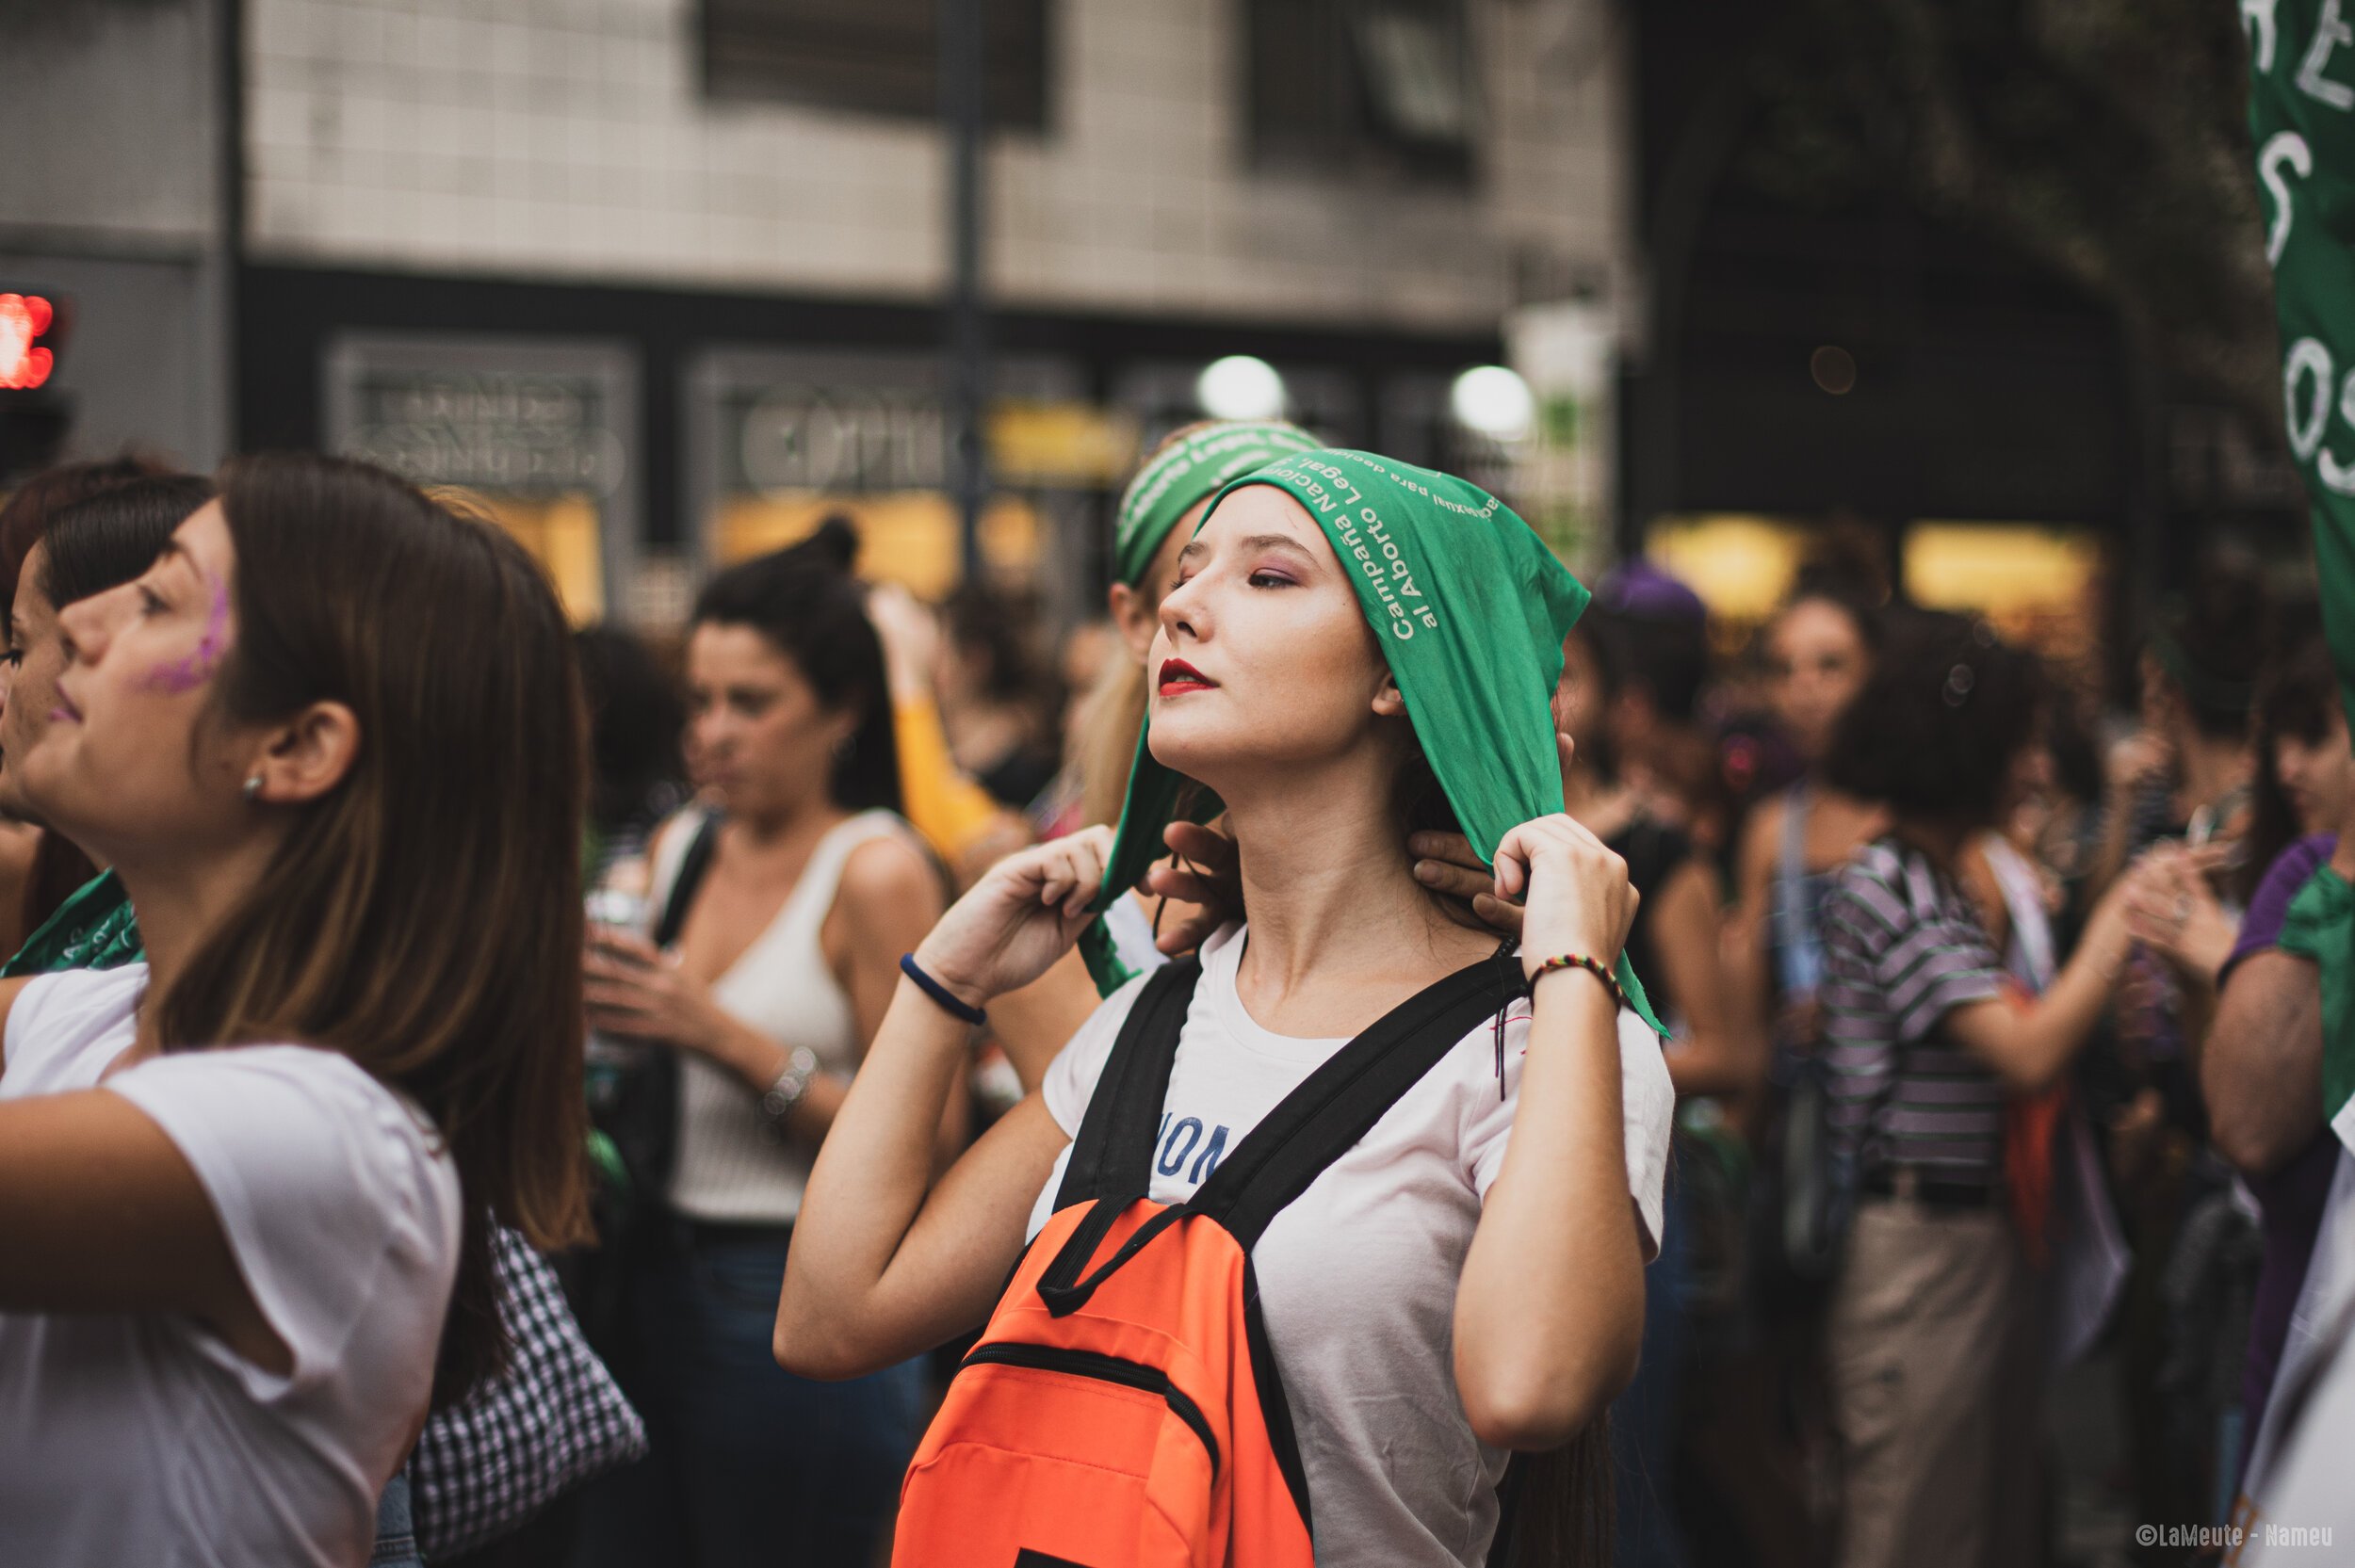   Une jeune manifestante demande de l'aide pour attacher son foulard vert. Ce foulard est devenu le symbole de la lutte pour la légalisation de l'avortement en Argentine grâce à la campagne nationale pour le droit à l'avortement légal, gratuit et san